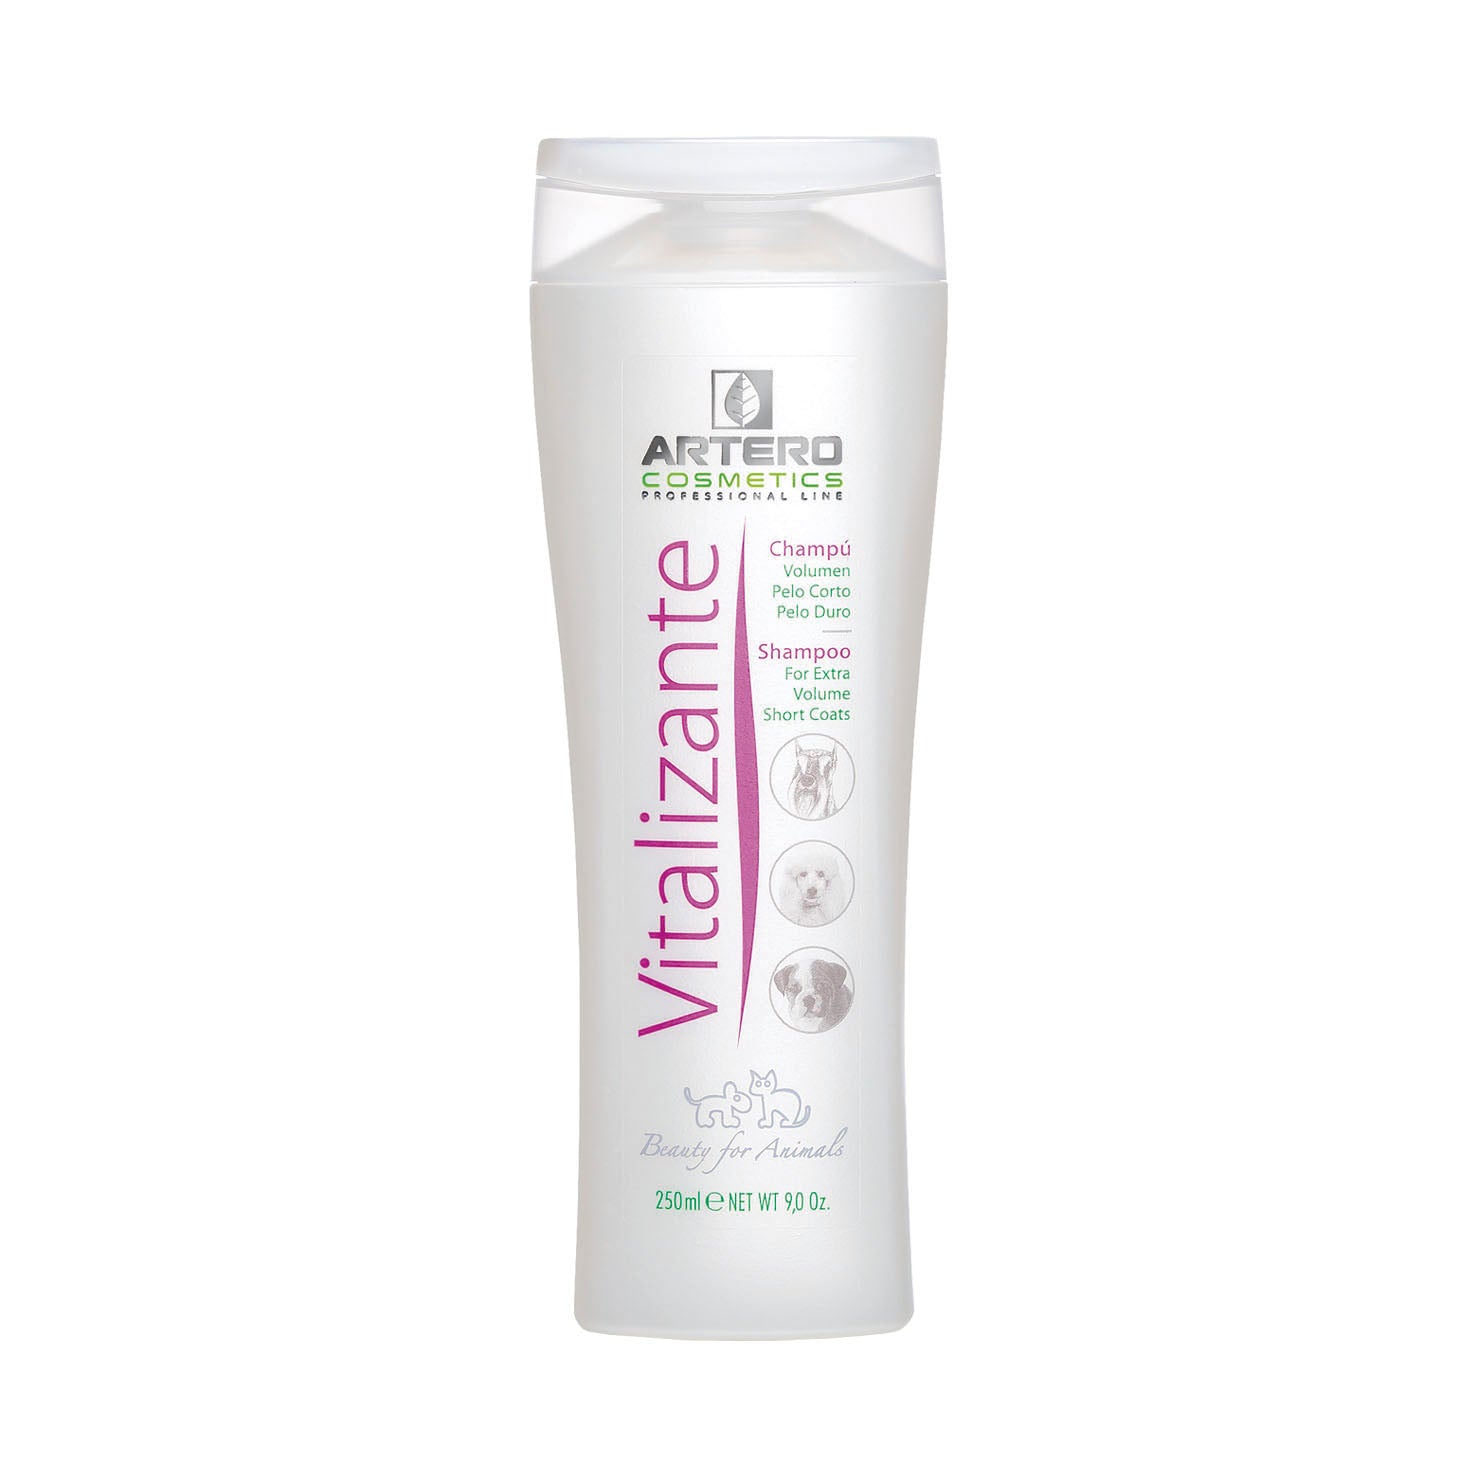 Vitalizante Shampoo 250ml & 5L